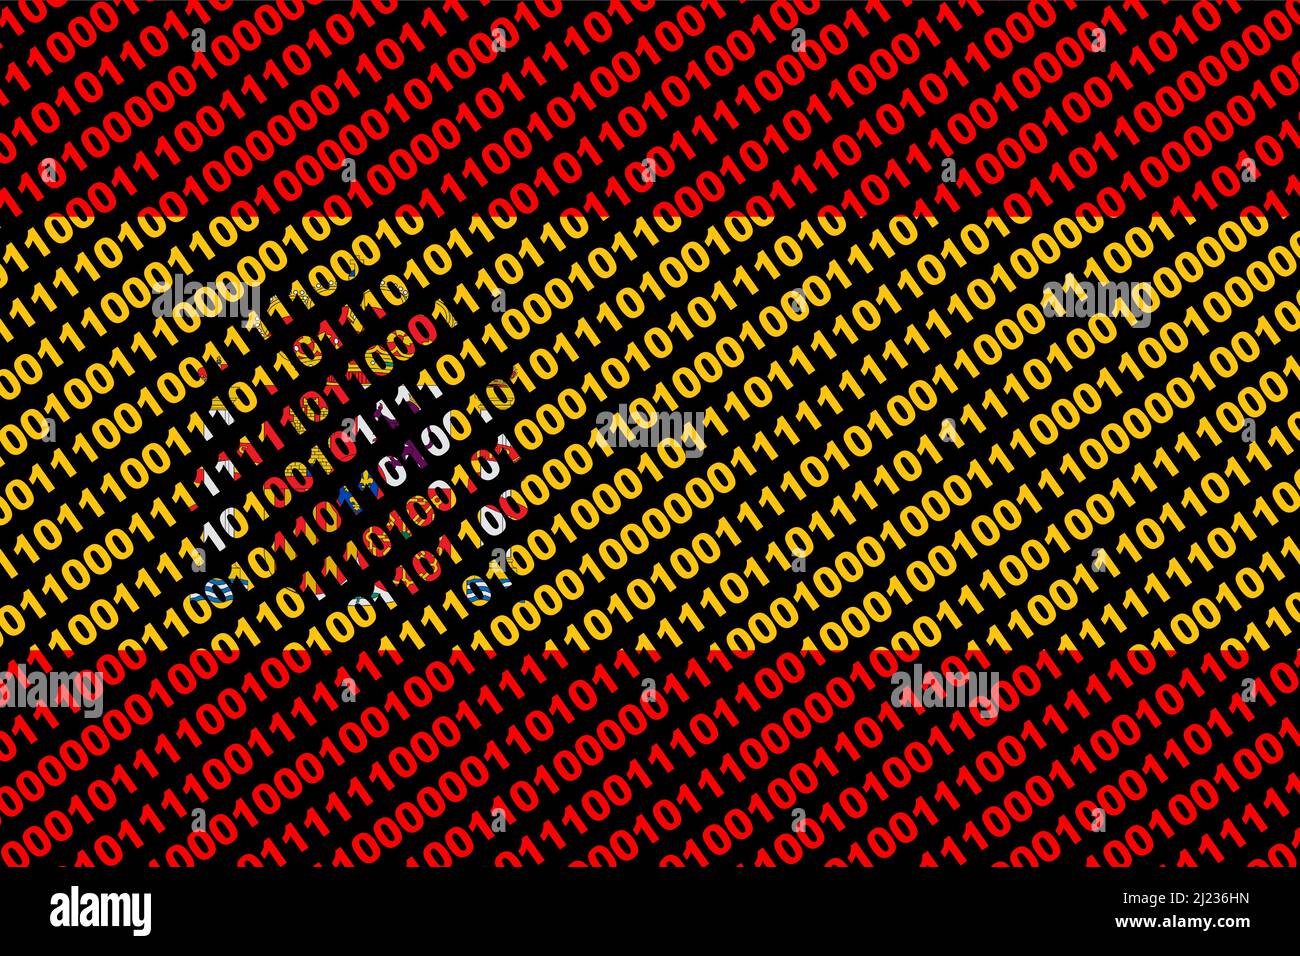 Hacker Spanien. Digitale Flagge Spaniens und ein binäres Cybersicherheitskonzept mit 0 und 1. Computerhacker Spanien. Computerangriff. Dreifarbig. Stockfoto